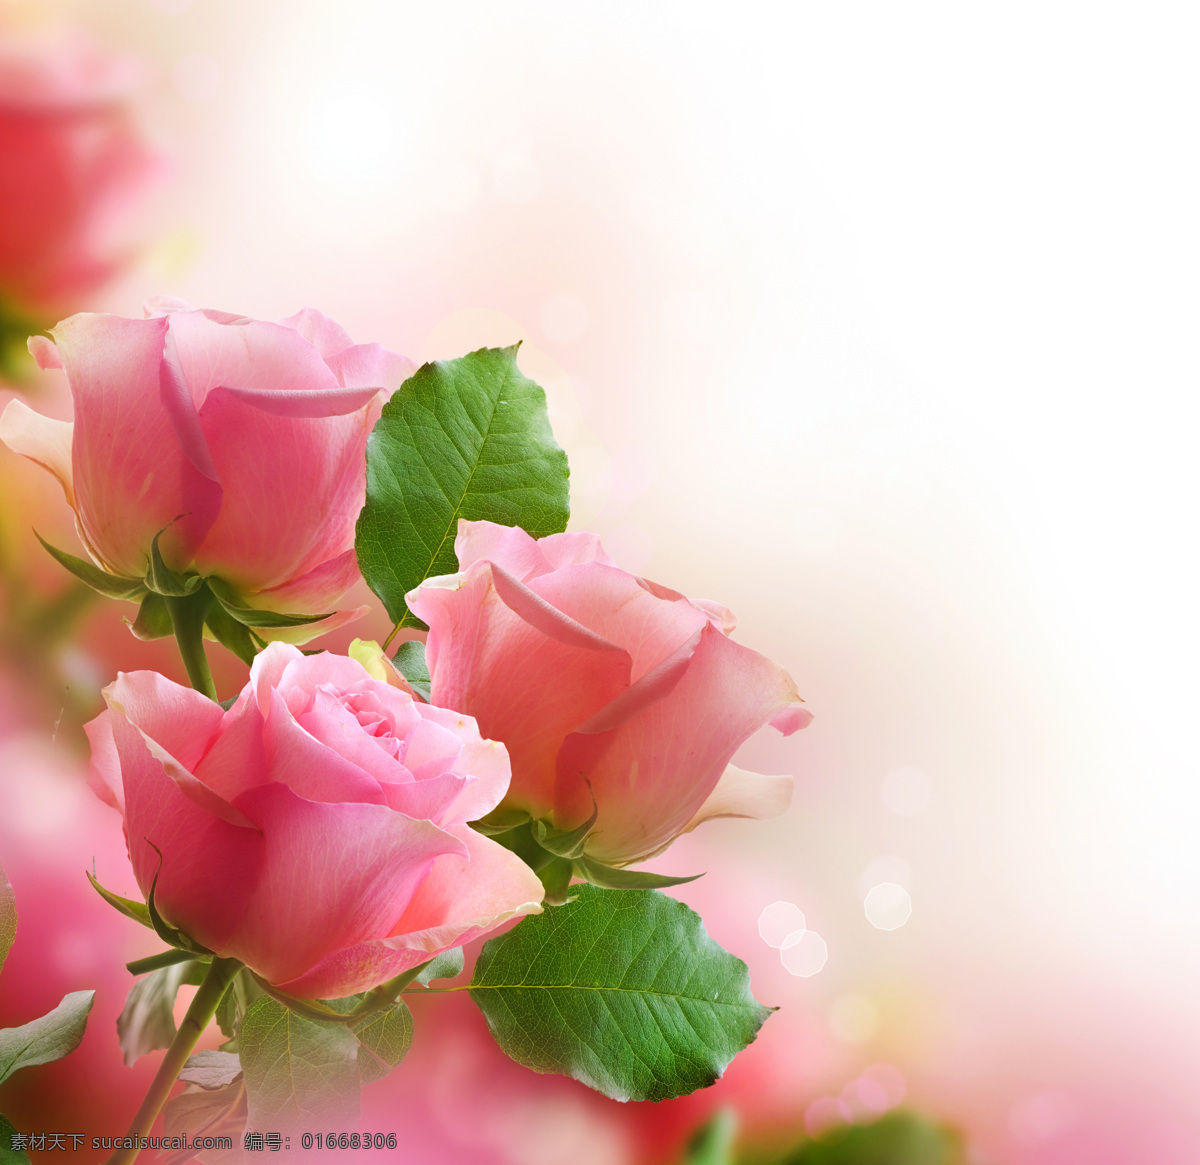 唯美 梦幻 粉色 鲜花 景 高清 唯美梦幻 背景 精美鲜花 粉色花朵 植物 生物世界 花草